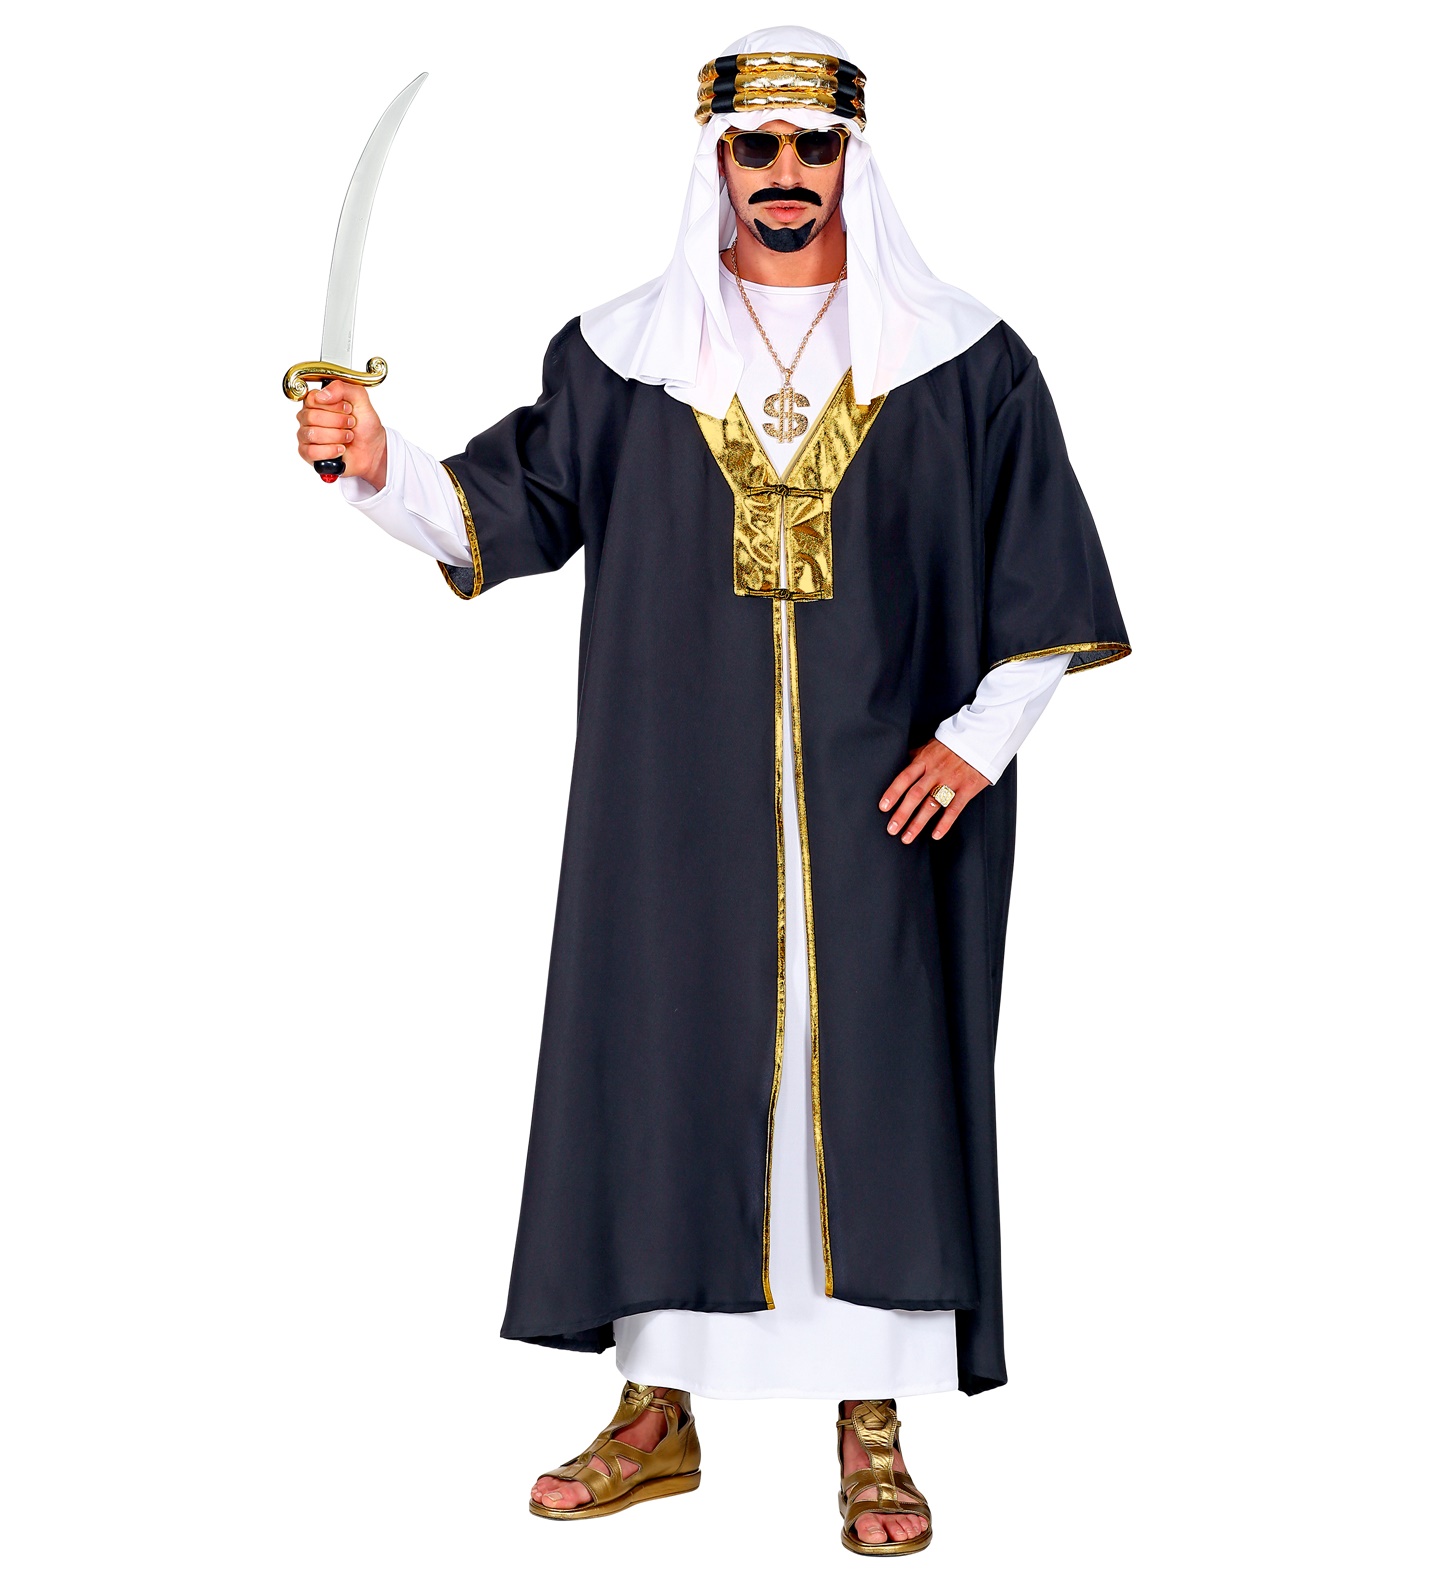 Costum sheik arab deluxe marimea m